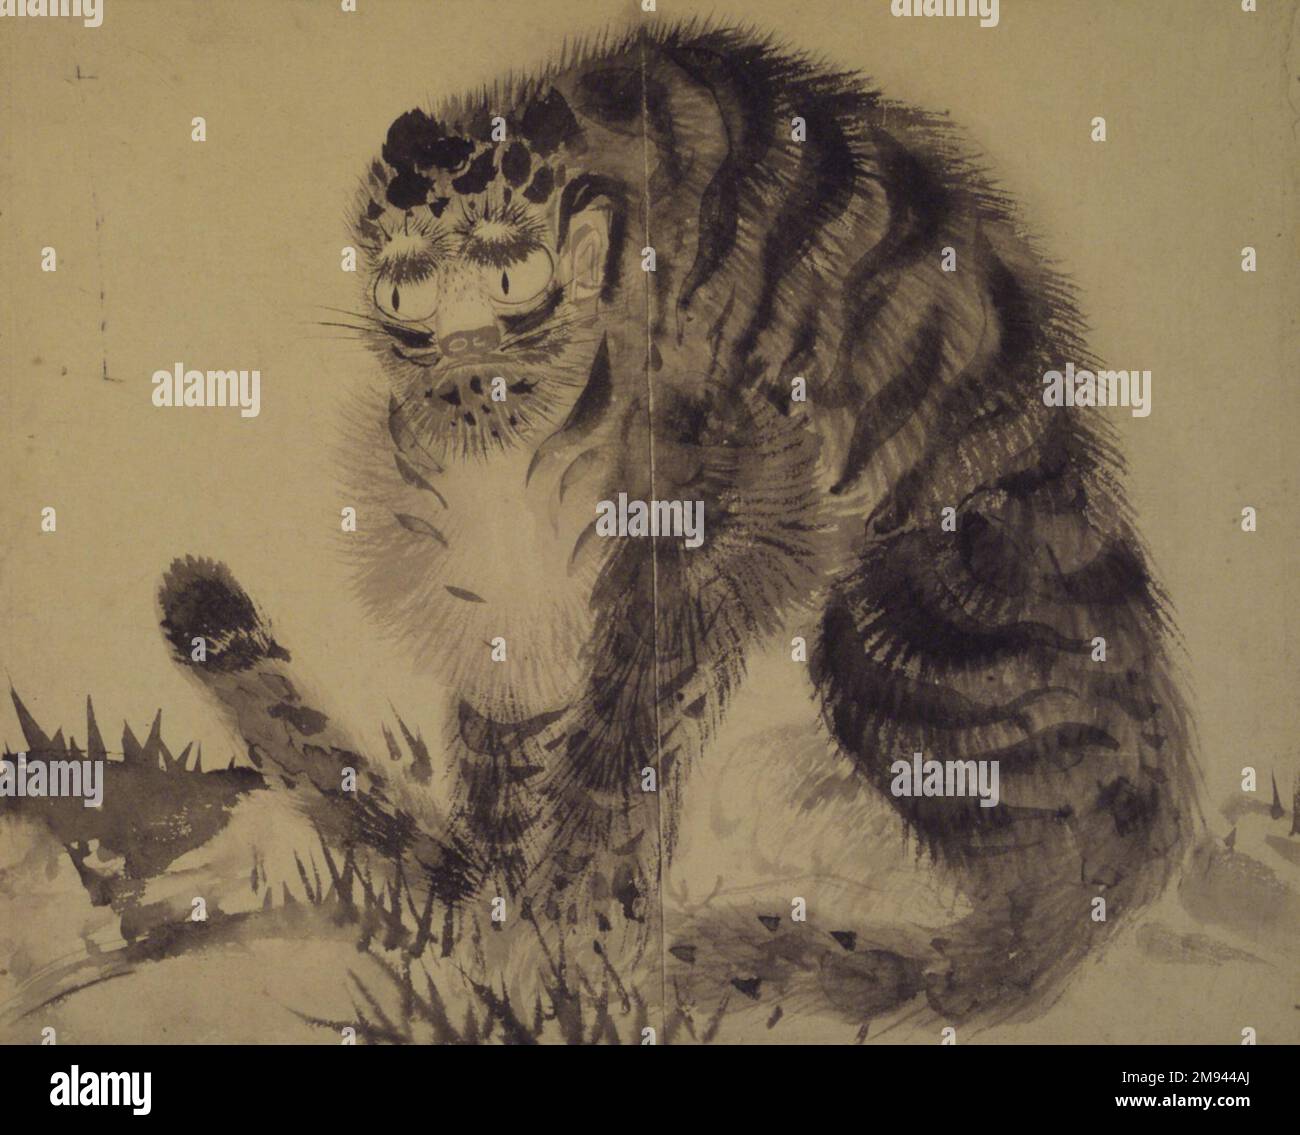 Tigre , fin 19th-début 20th siècle. Encre sur papier, 10 9/16 x 12 15/16 cm (26,8 x 32,8 cm). Art asiatique fin 19th-début 20th siècle Banque D'Images